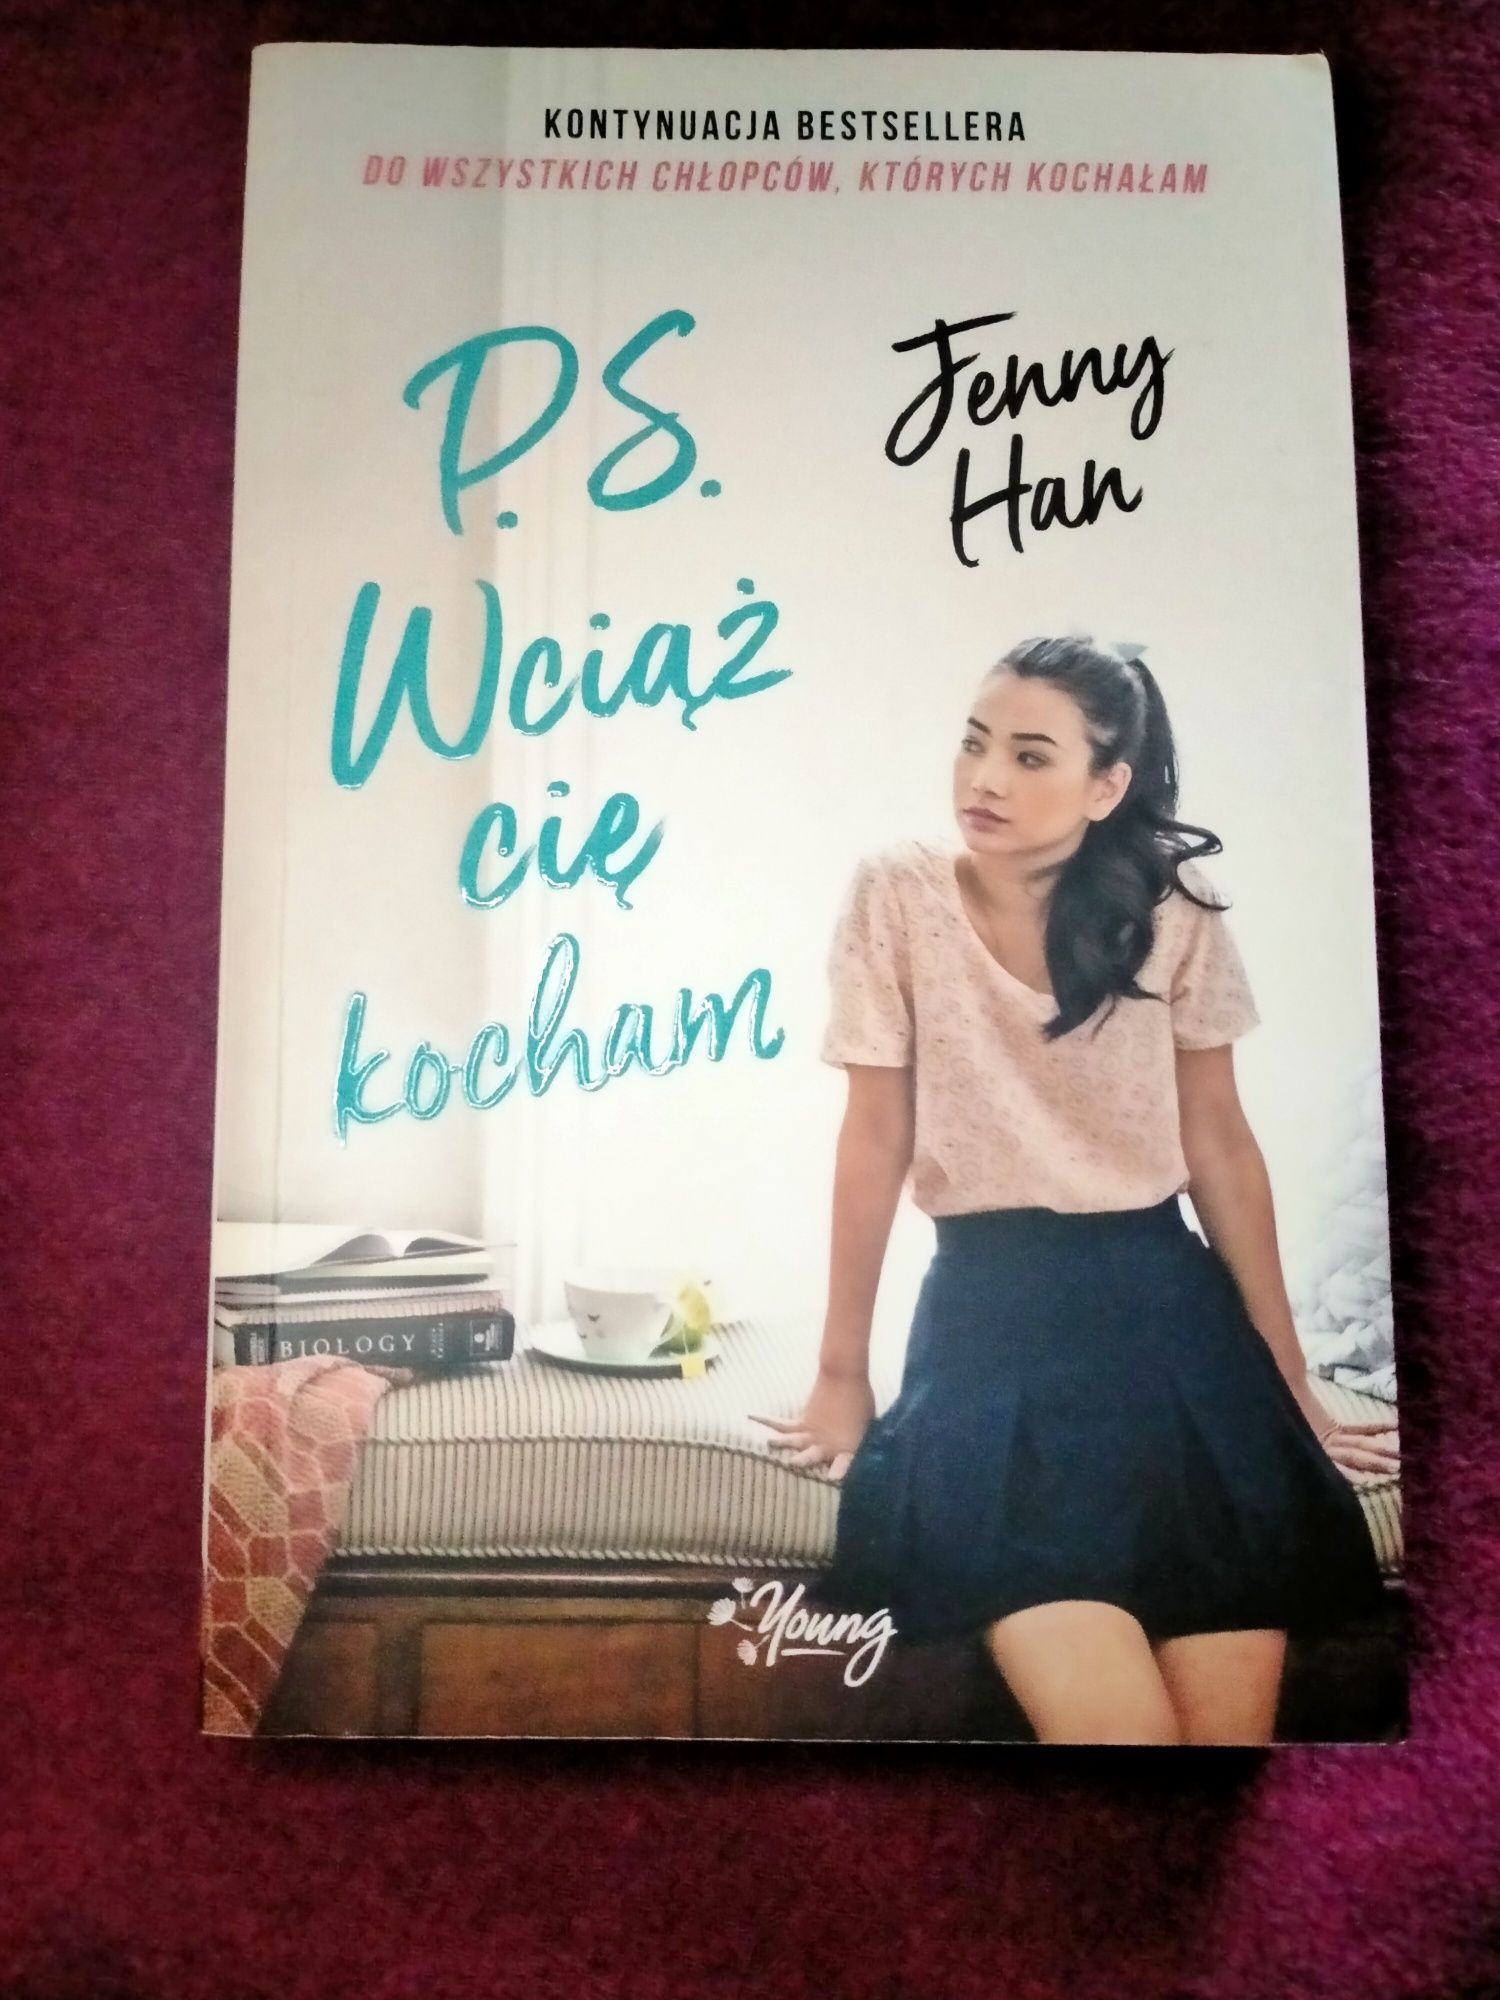 Jenny Han - "PS. Wciąż cię kocham. Chłopcy Tom 2"